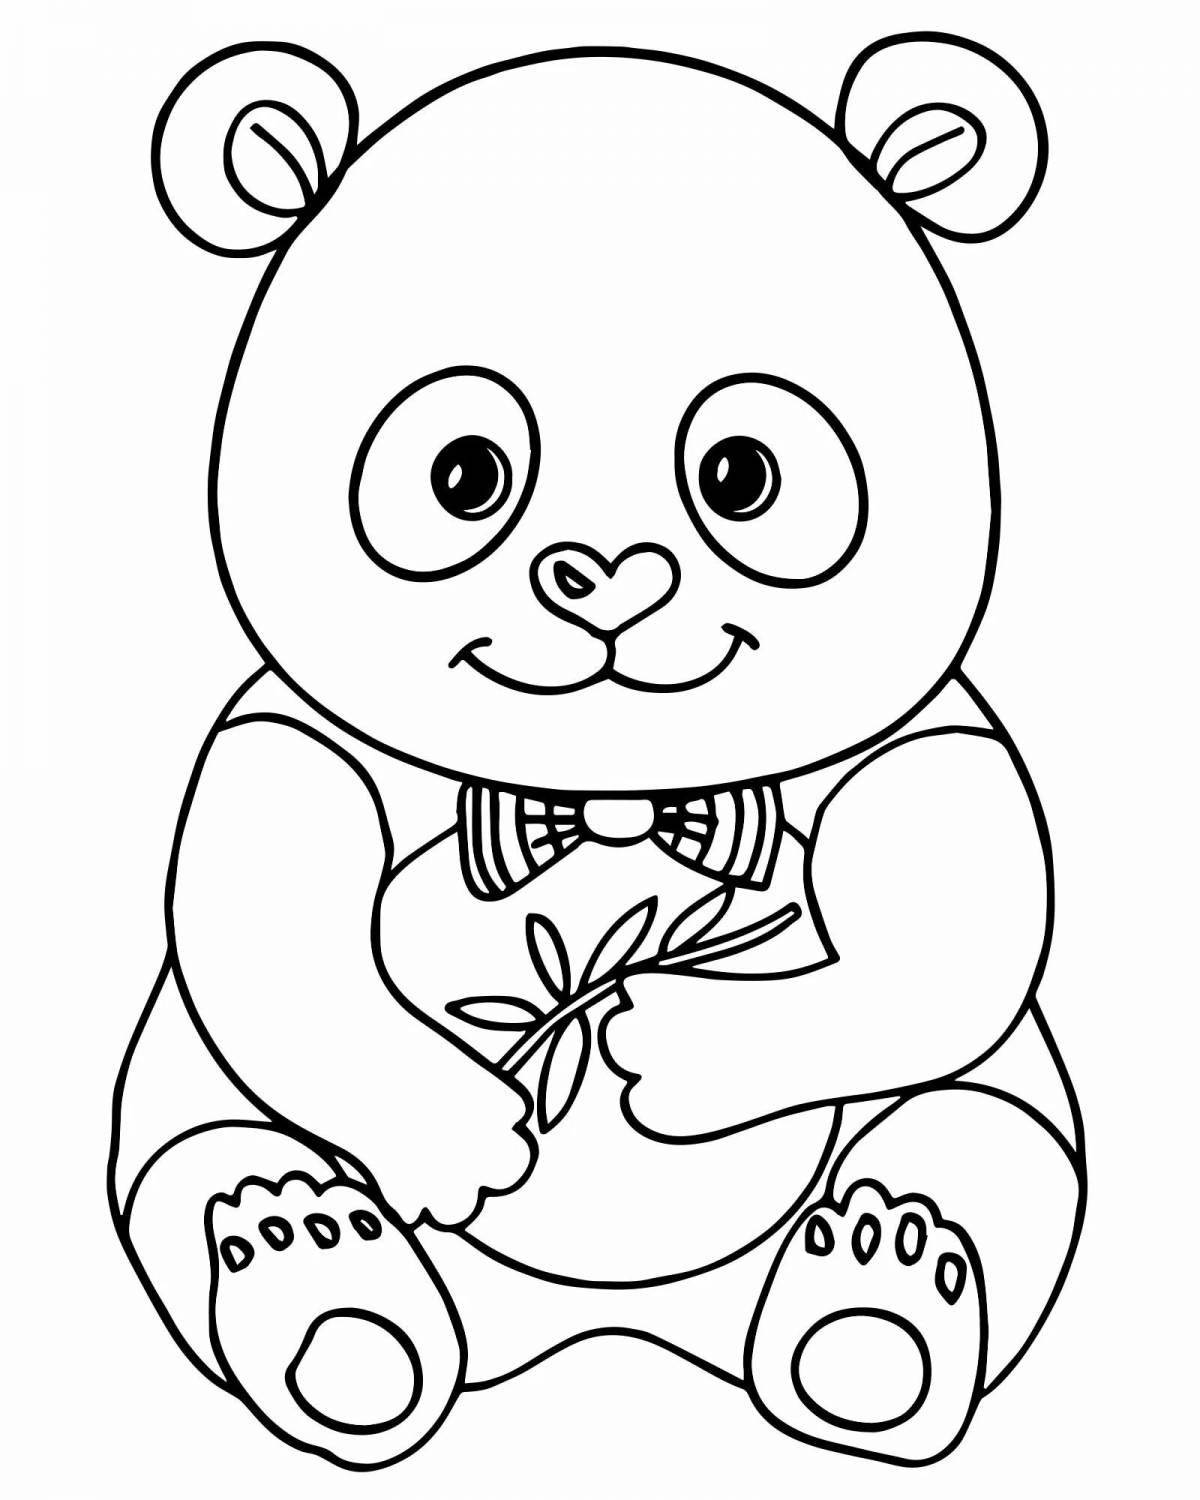 Cute panda coloring book for girls